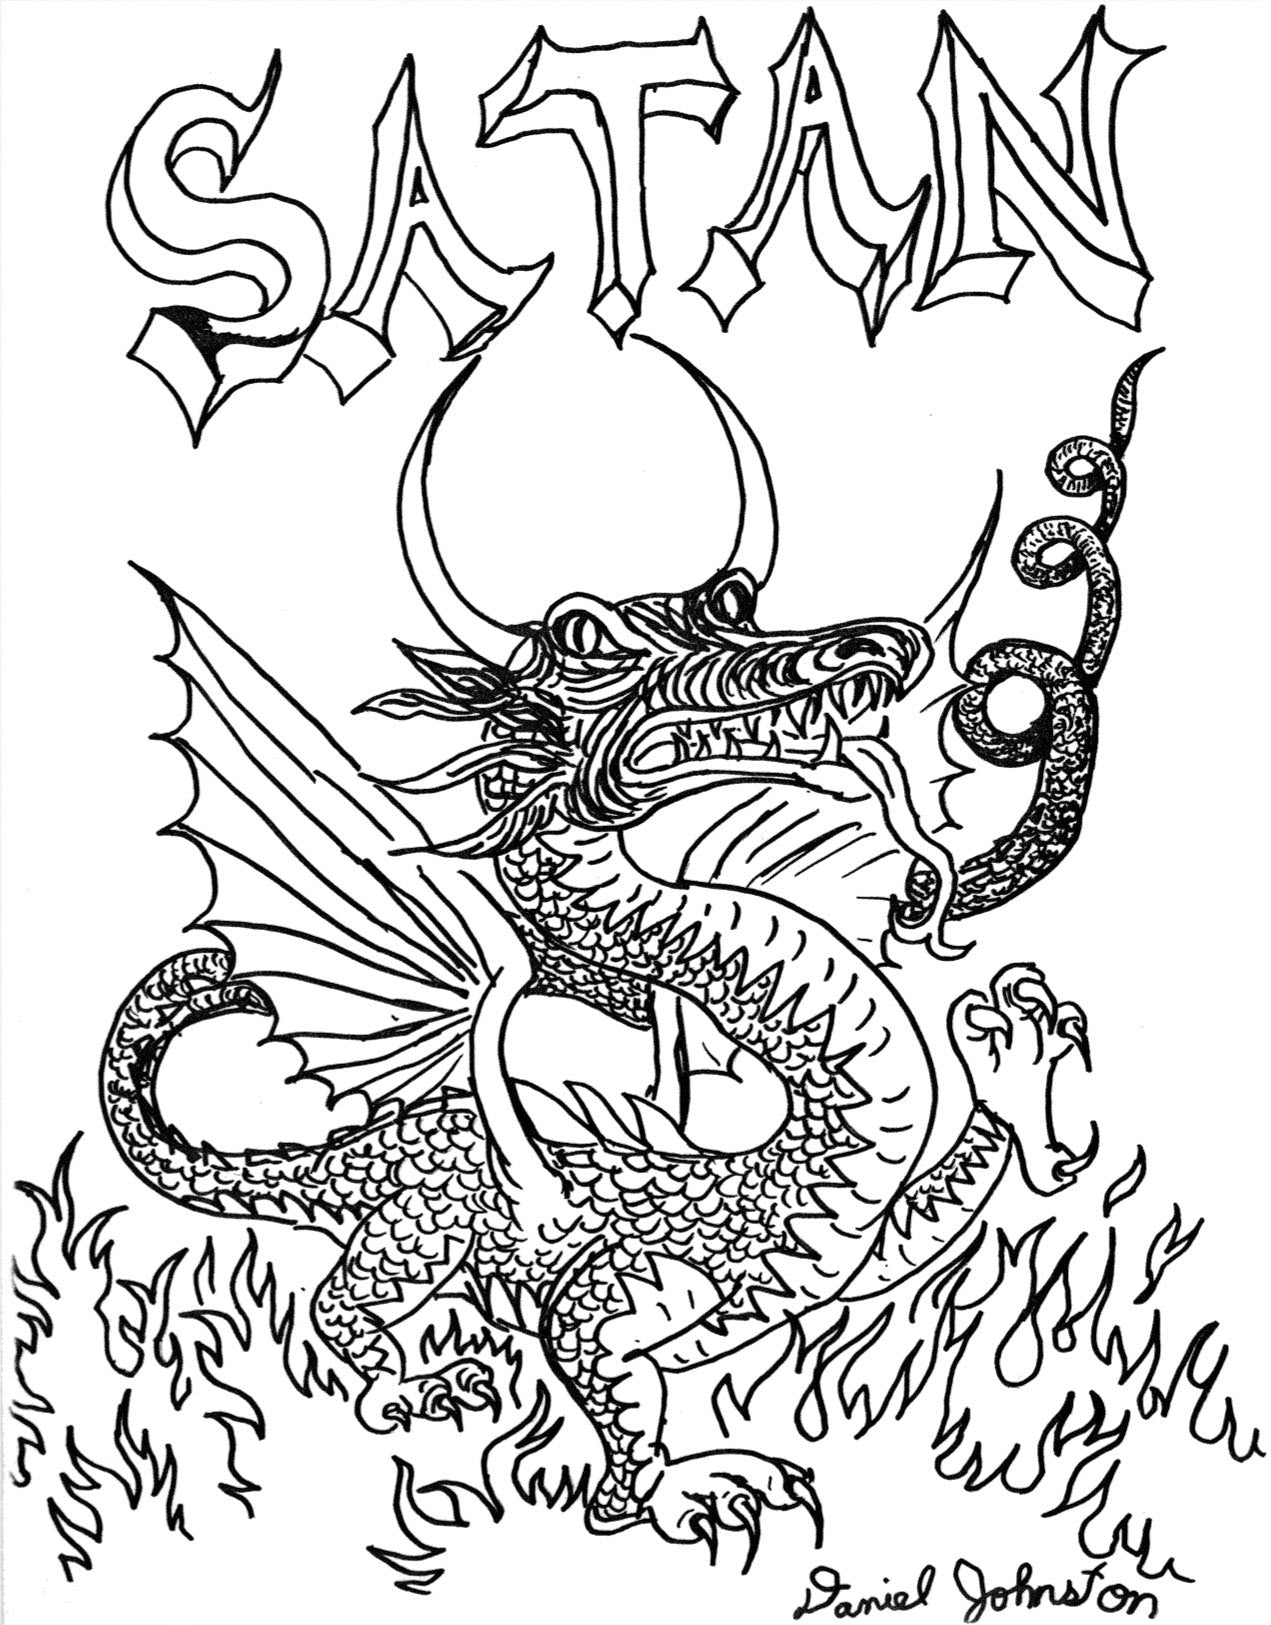 Art Print - "Satan"